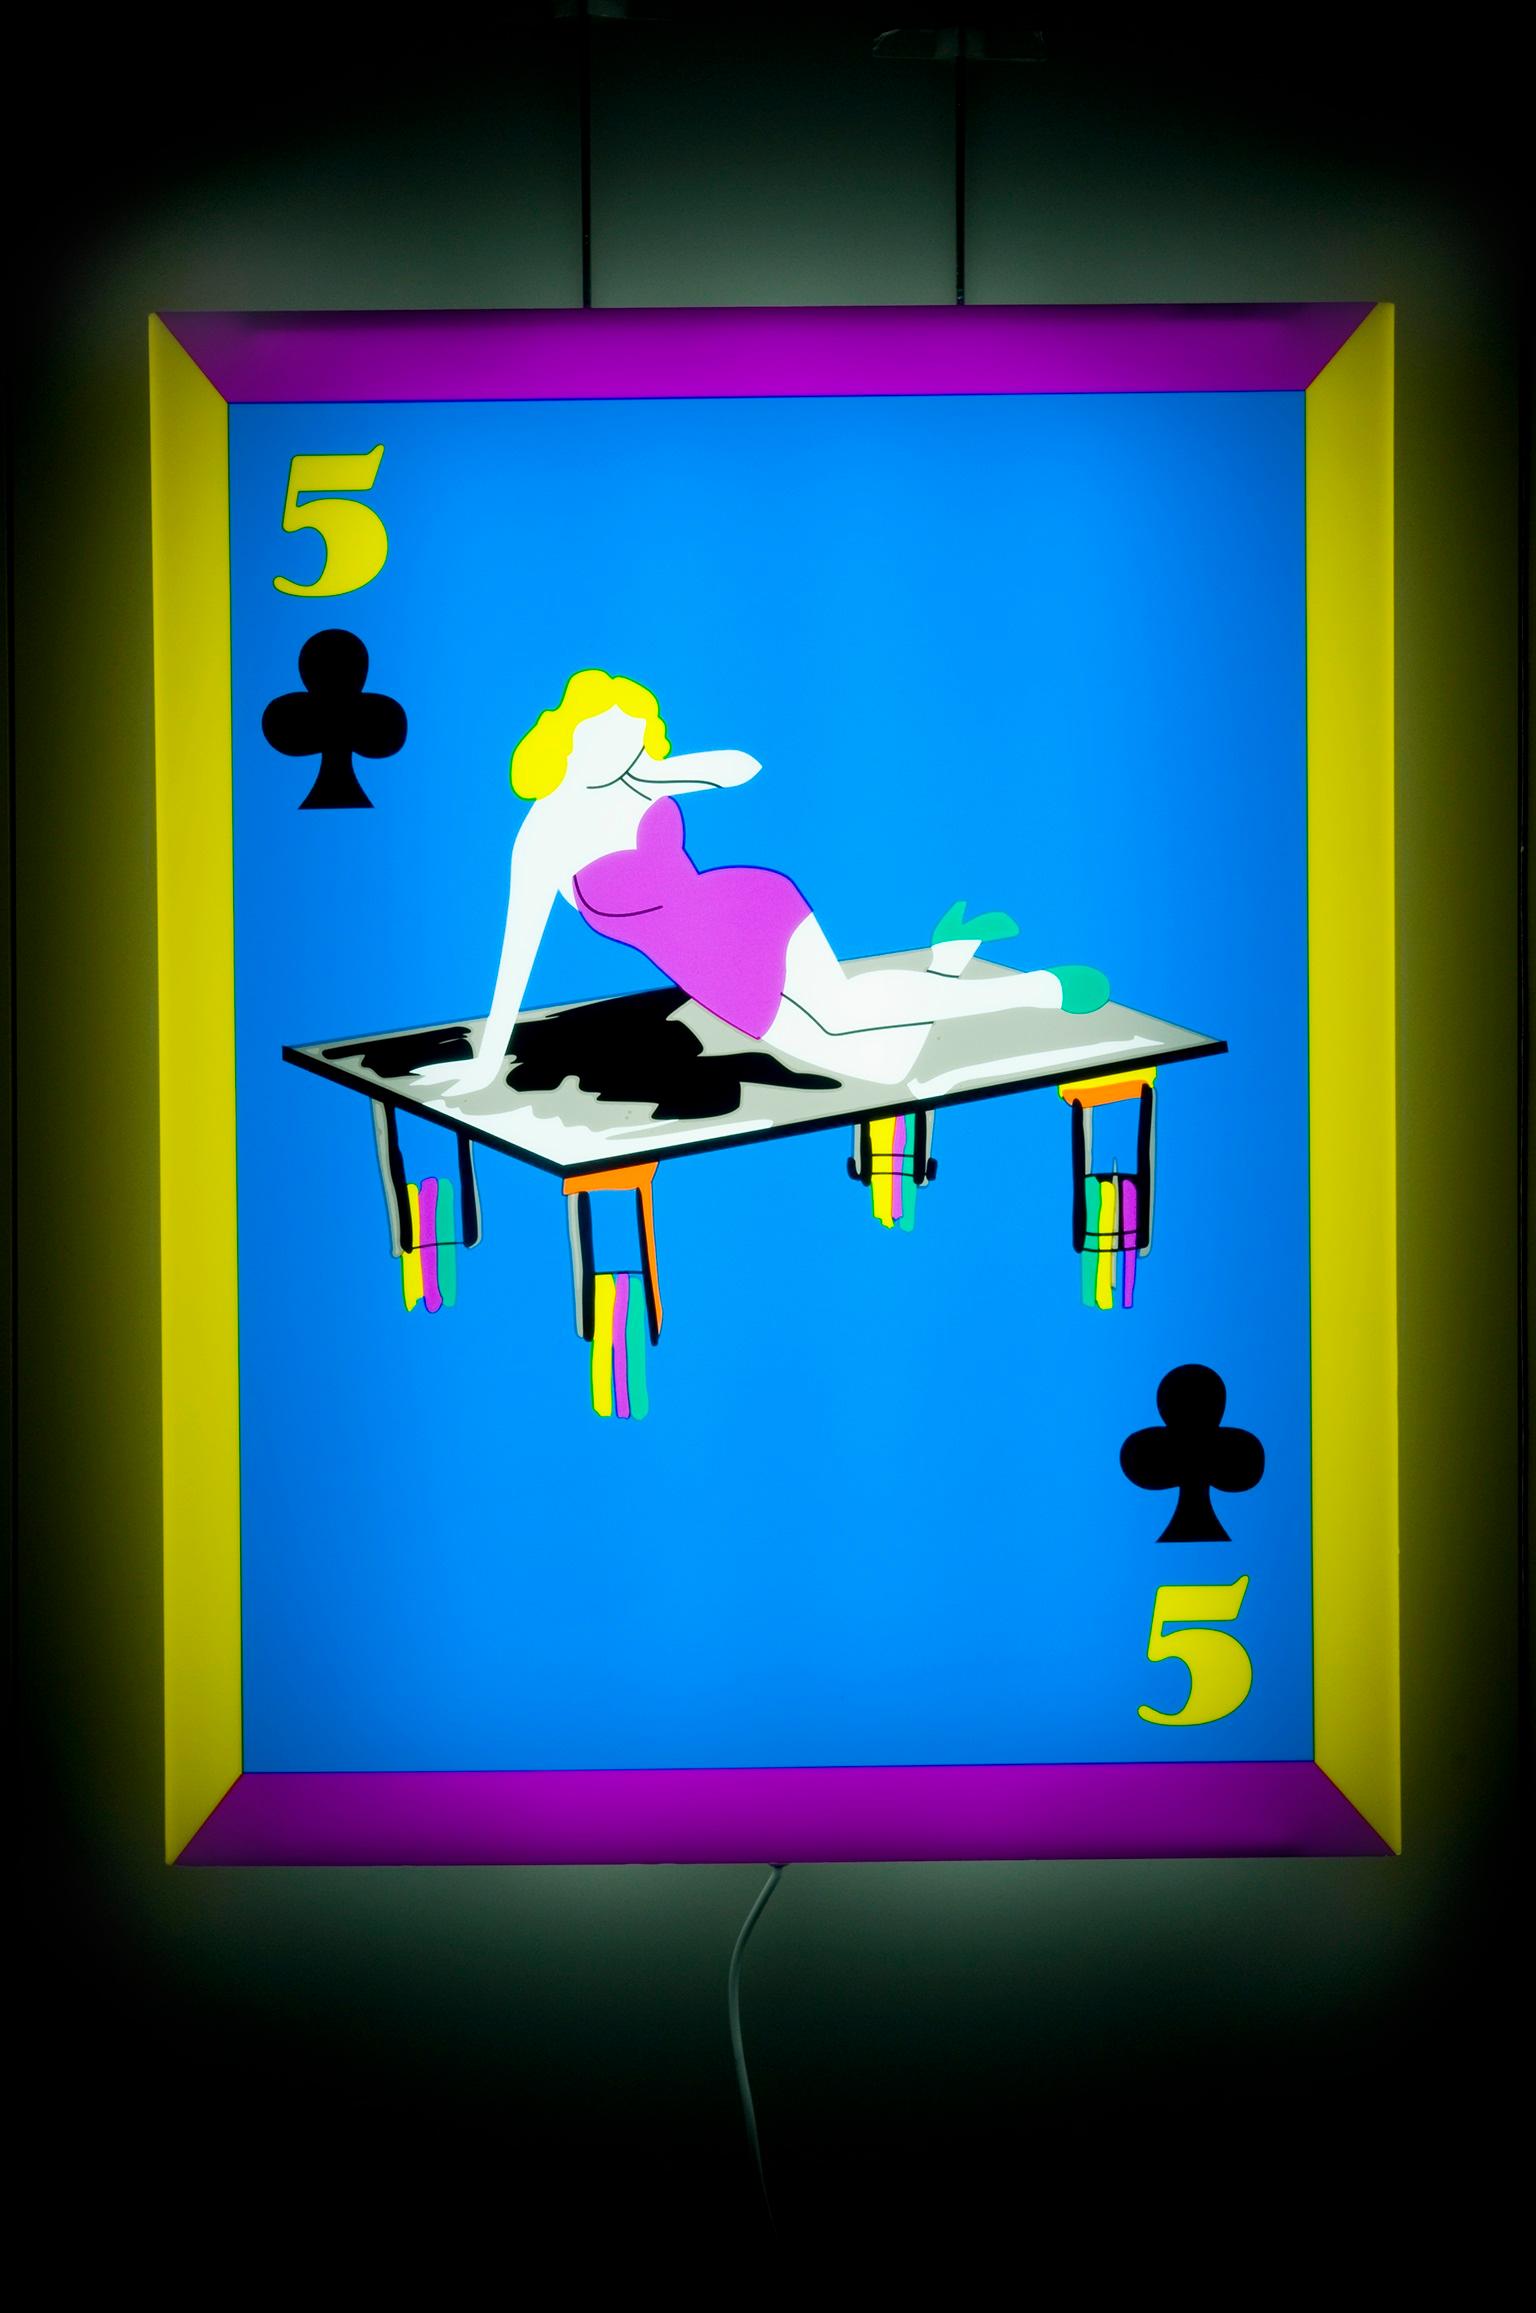 Edition de 7 pièces uniques plus 2 PA, faisant partie de la collection spéciale de 10 sujets différents de cartes à jouer.
